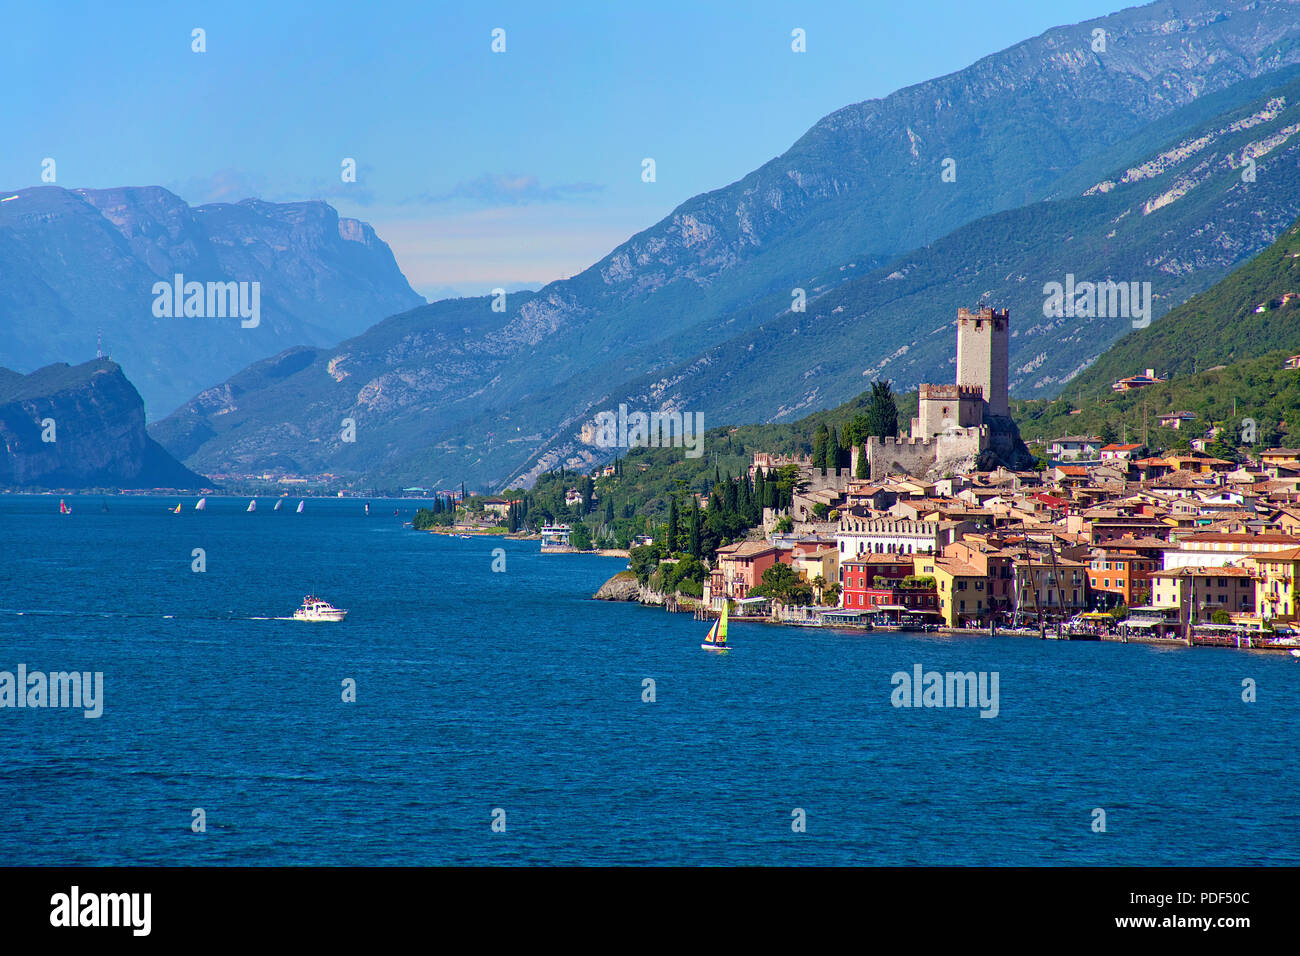 Vista desde el Lago de Garda en Malcesine con castillo Scaliger, Malcesine, provincia de Verona, Lago de Garda, Lombardía, Italia Foto de stock